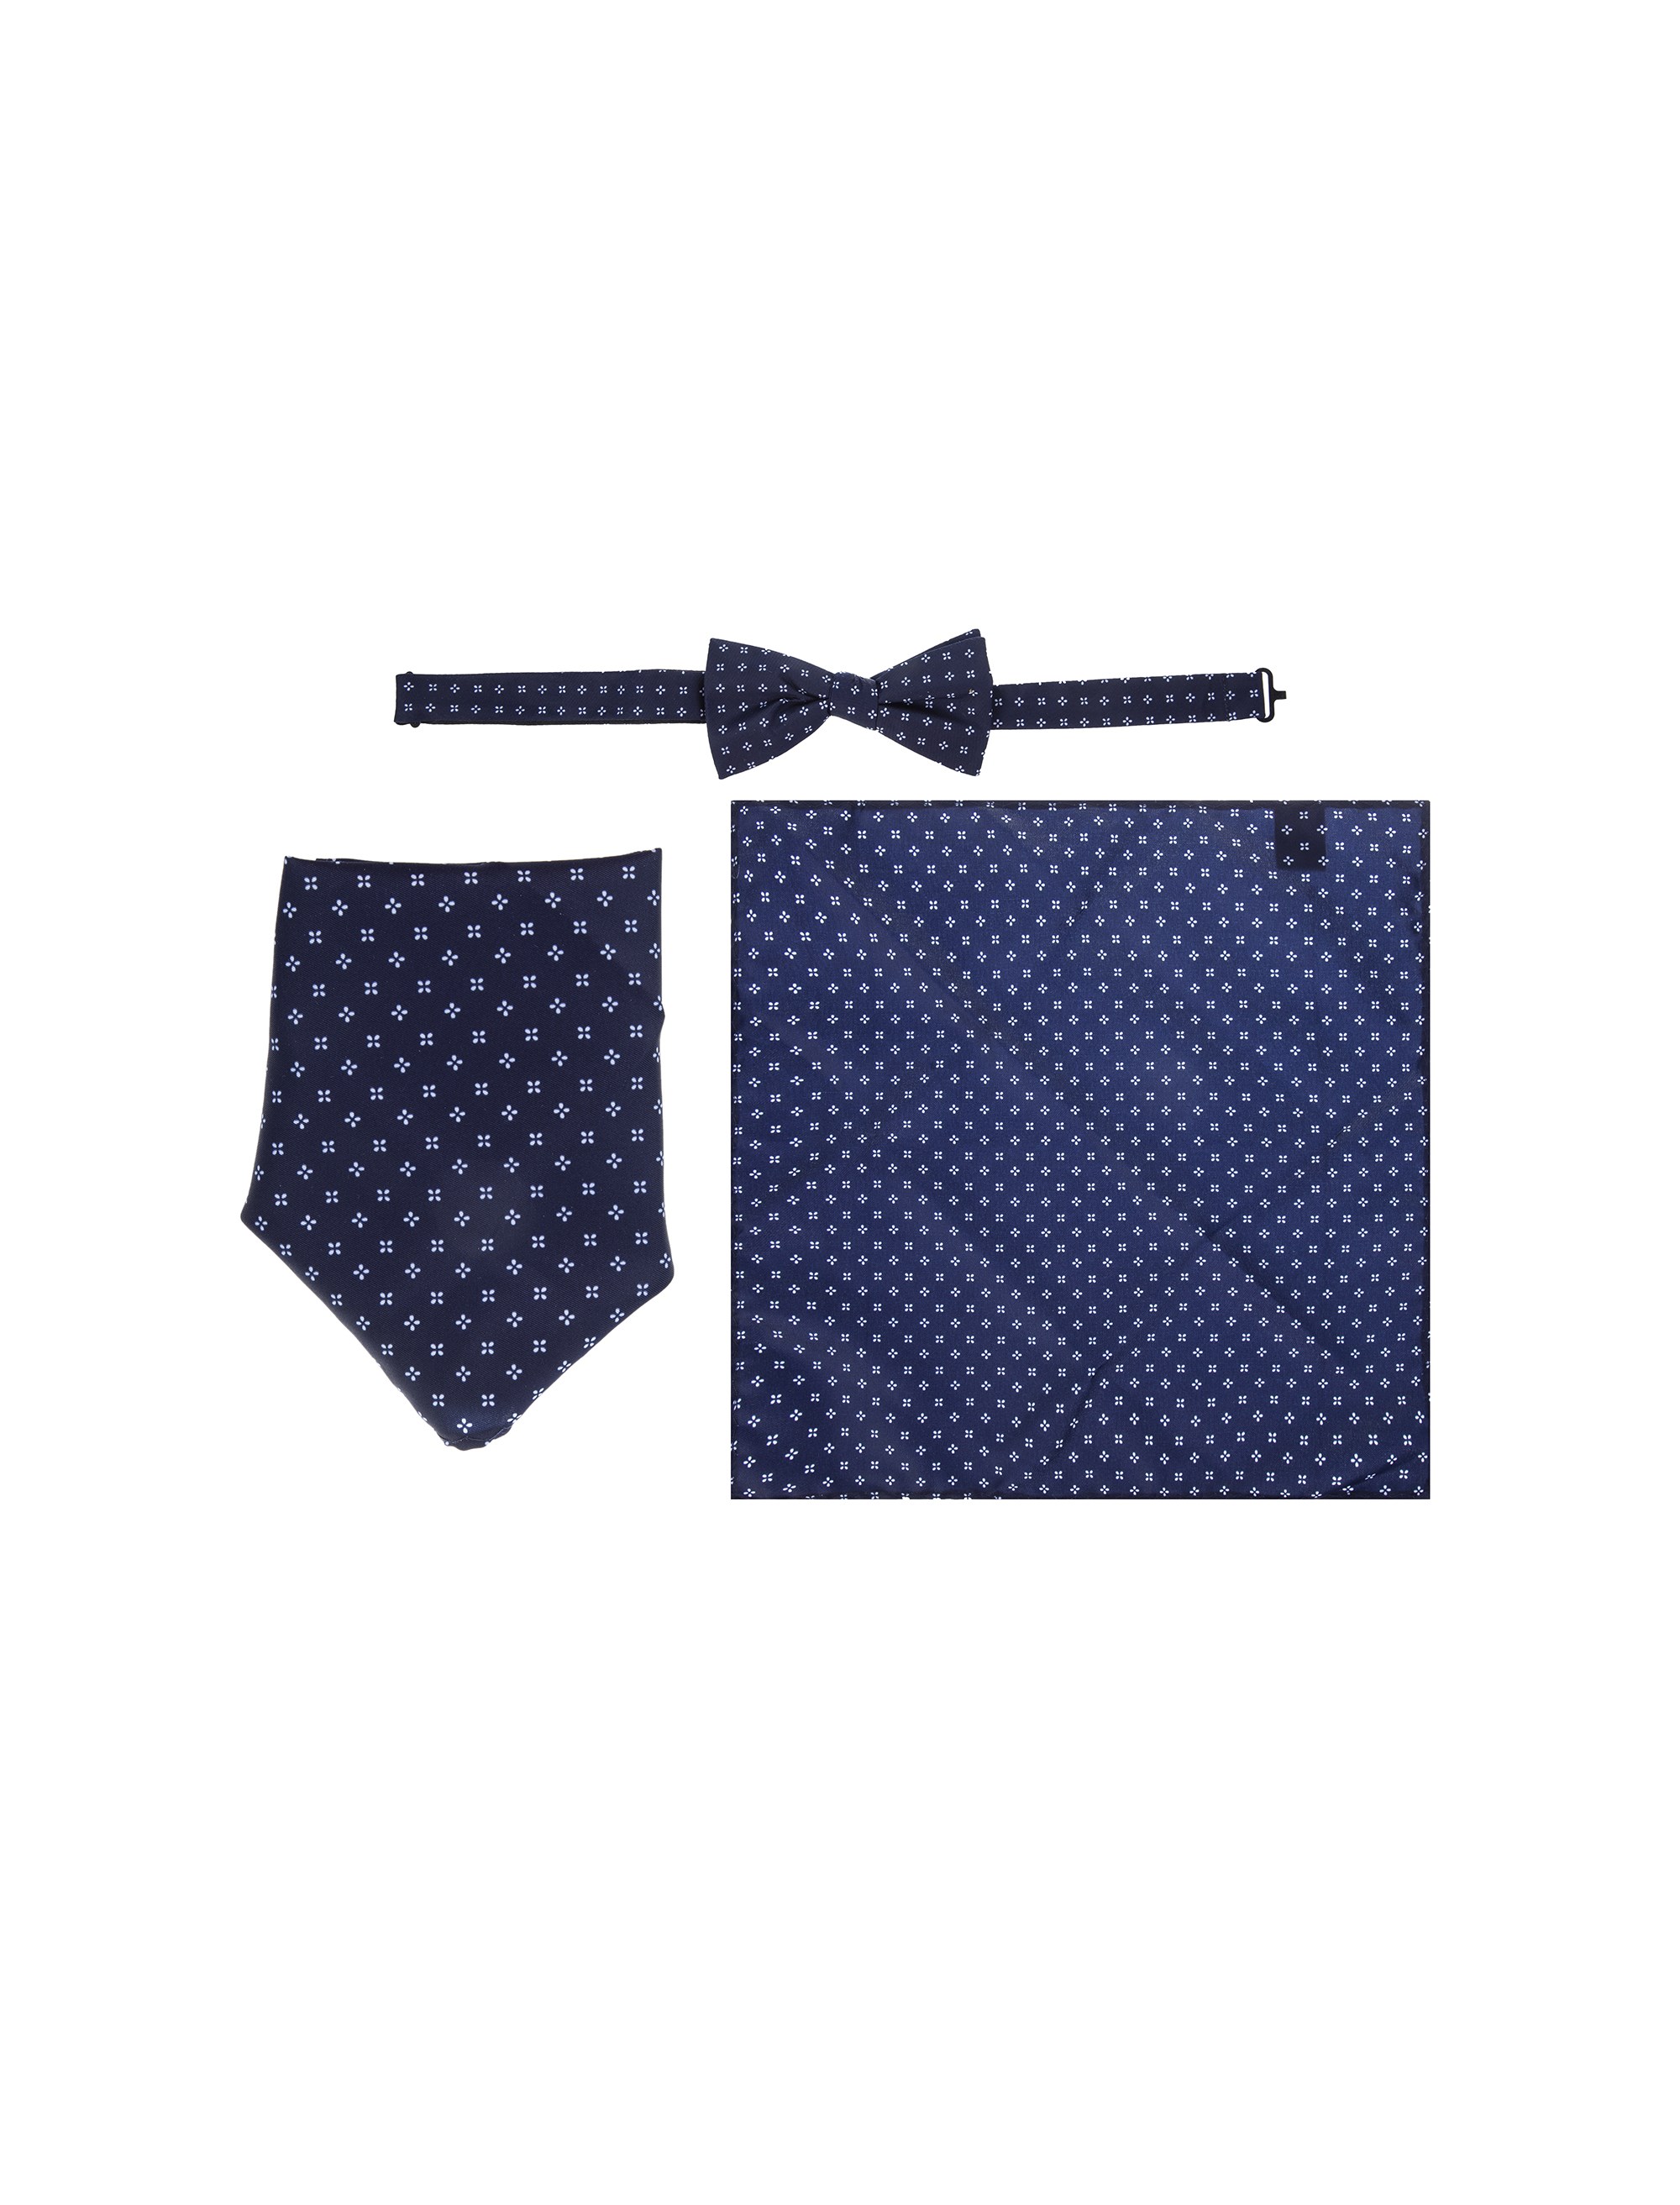 کراوات ساده مردانه - سلکتد تک سایز